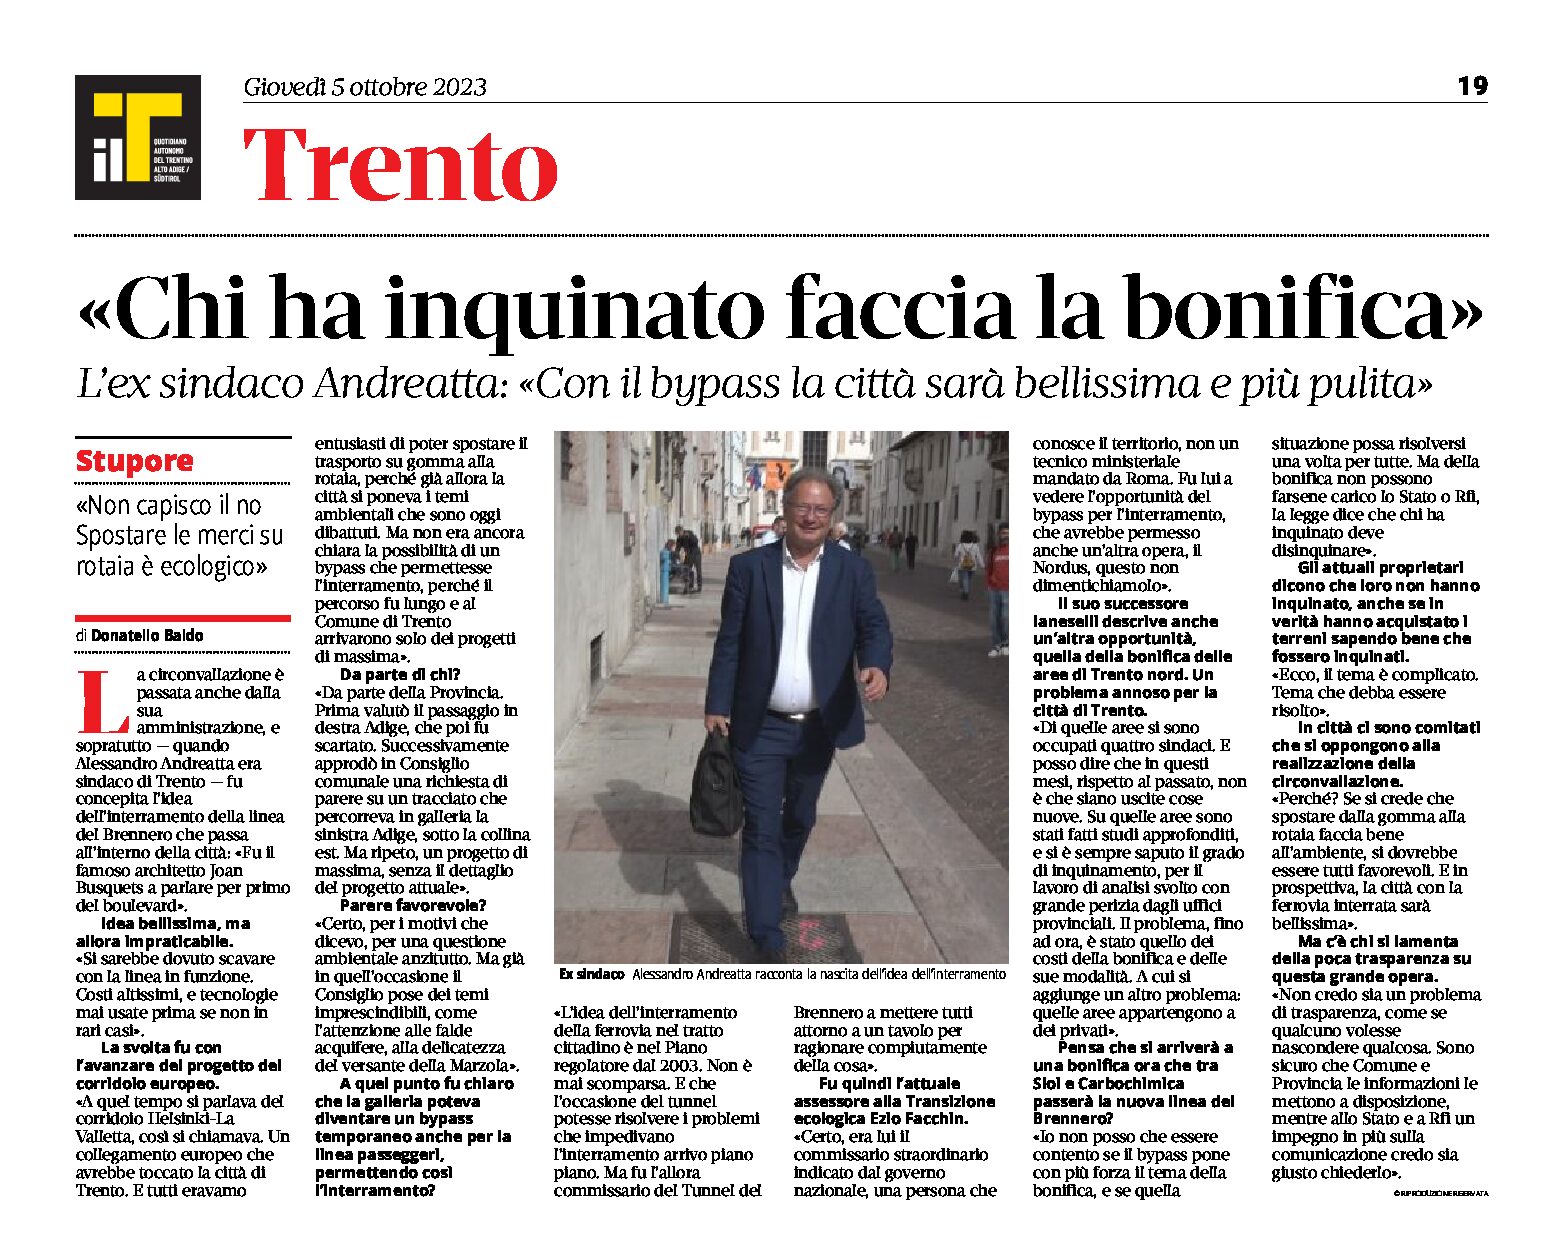 Trento, bypass ferroviario: “chi ha inquinato faccia la bonifica” intervista all’ex sindaco Andreatta